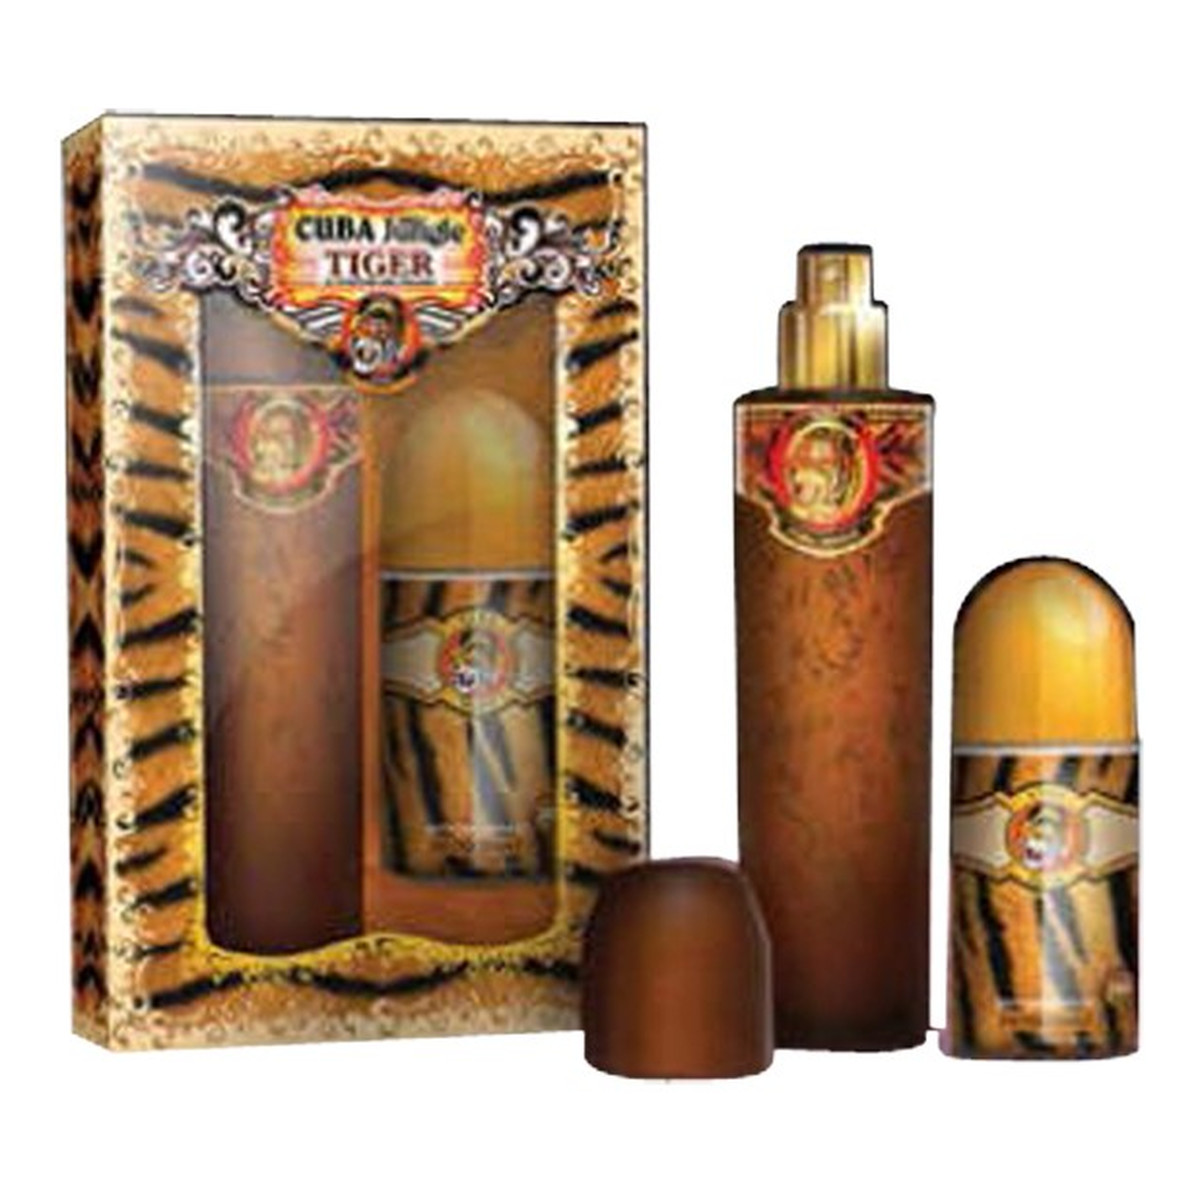 Cuba Jungle Tiger woda perfumowana 100ml + Deodorant 50ml